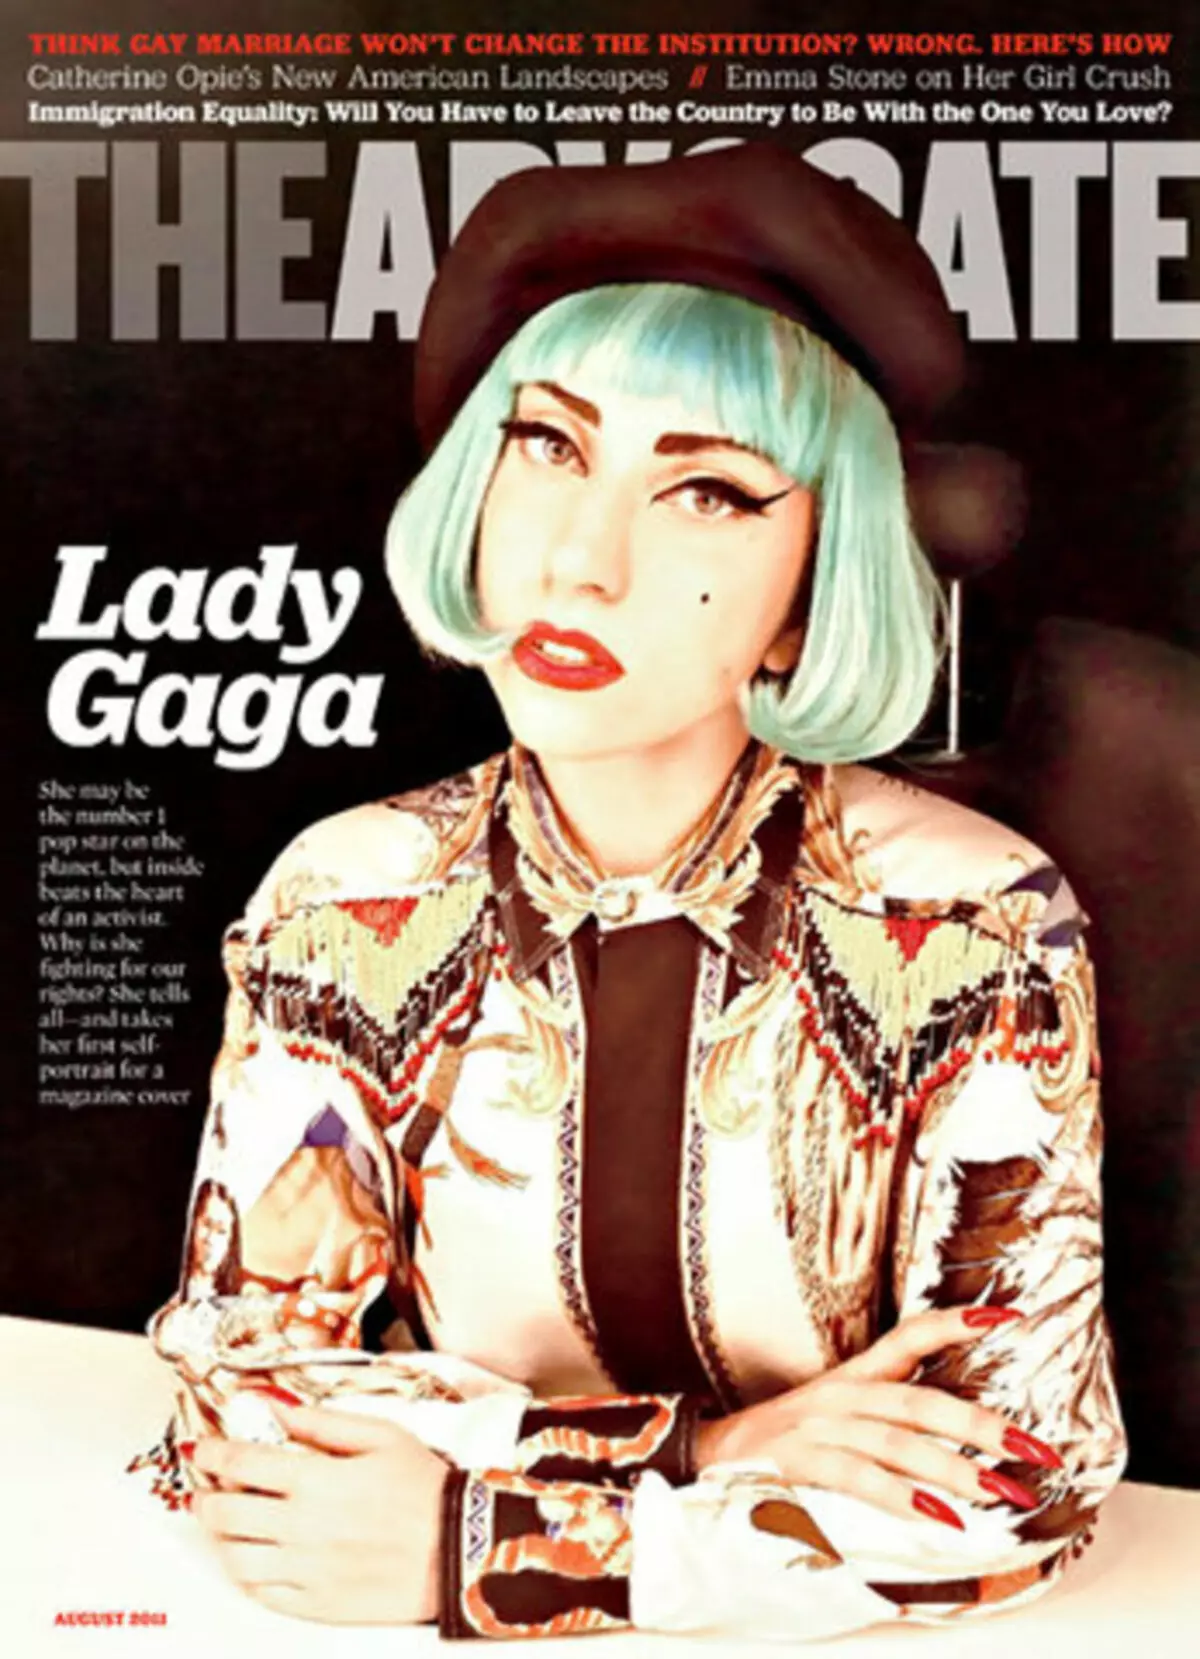 Lady Gaga gelut karo pernyataan yen dheweke ngapusi komunitas homo